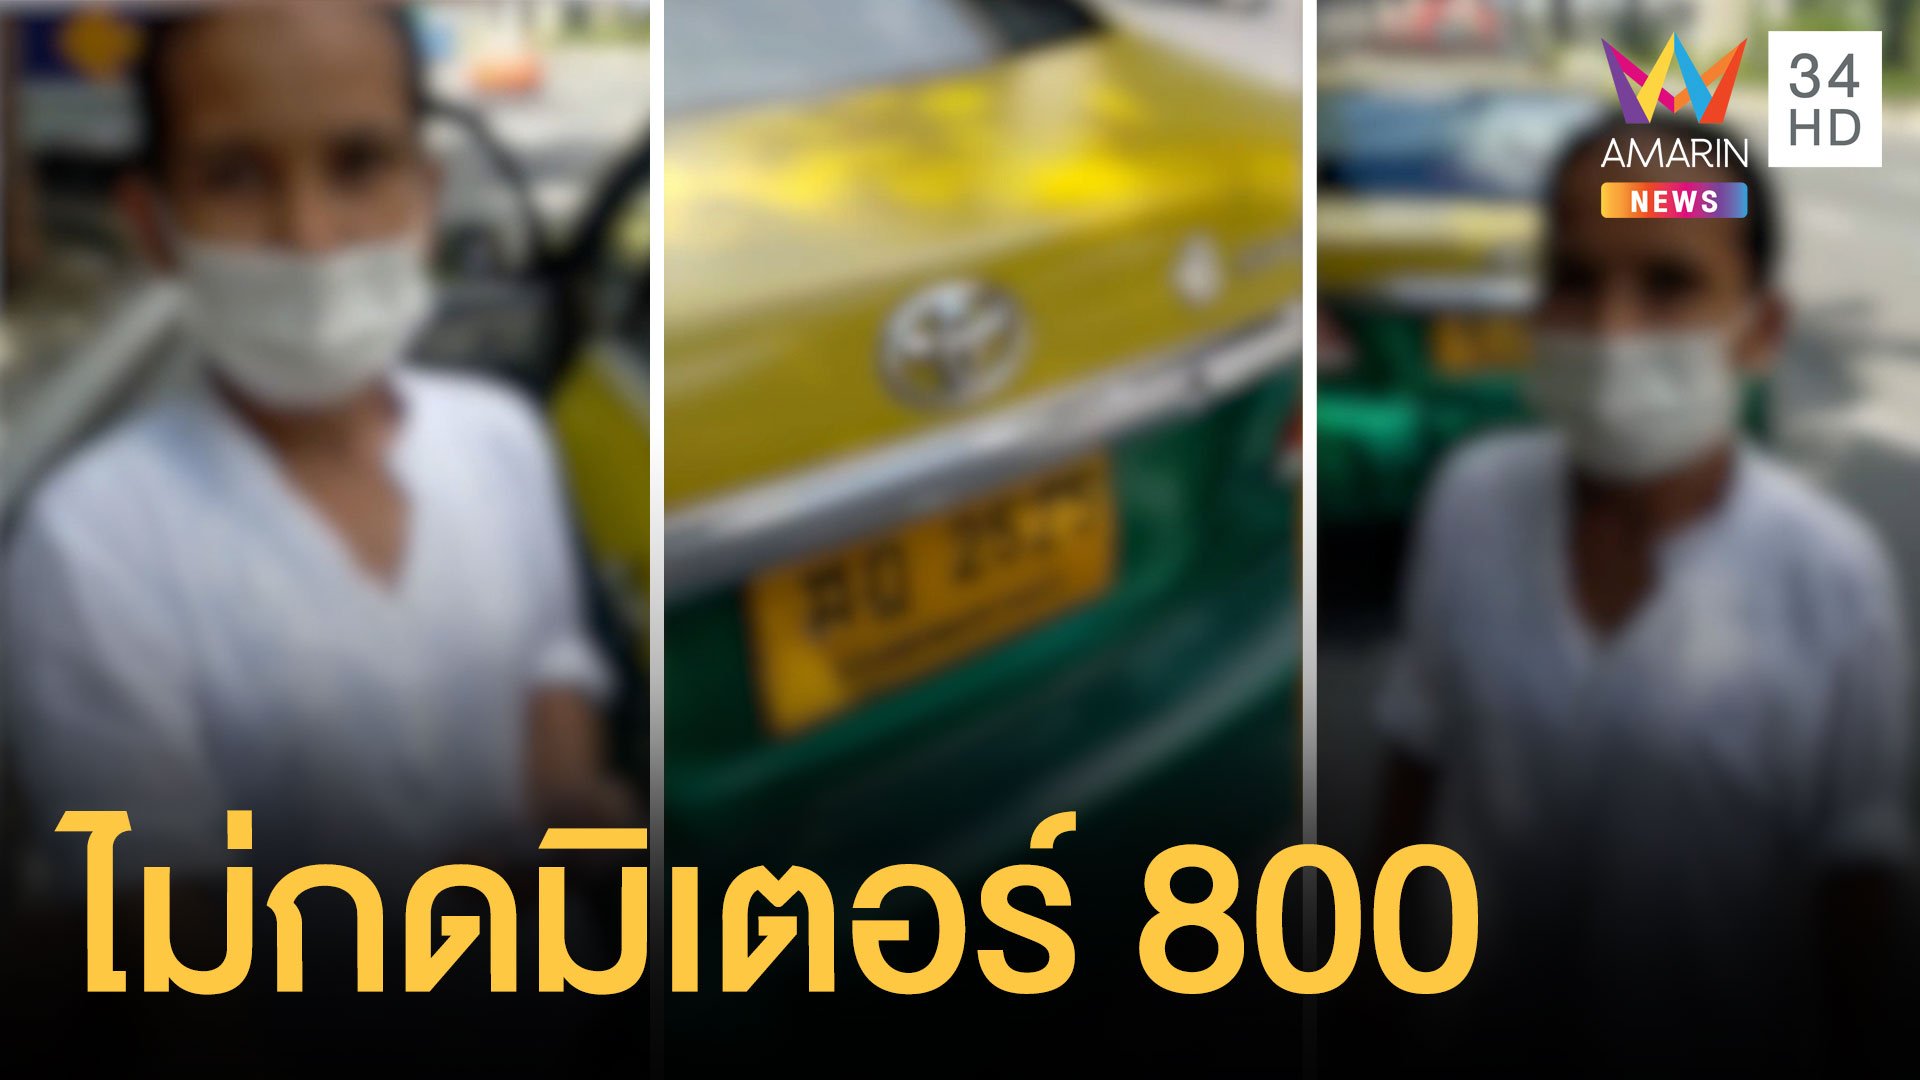 แท็กซี่พาเมียมารับลูกค้า ดอนเมืองไปสมุทรสาครไม่กดมิเตอร์ 800 บาท | ข่าวอรุณอมรินทร์ | 31 พ.ค. 64 | AMARIN TVHD34